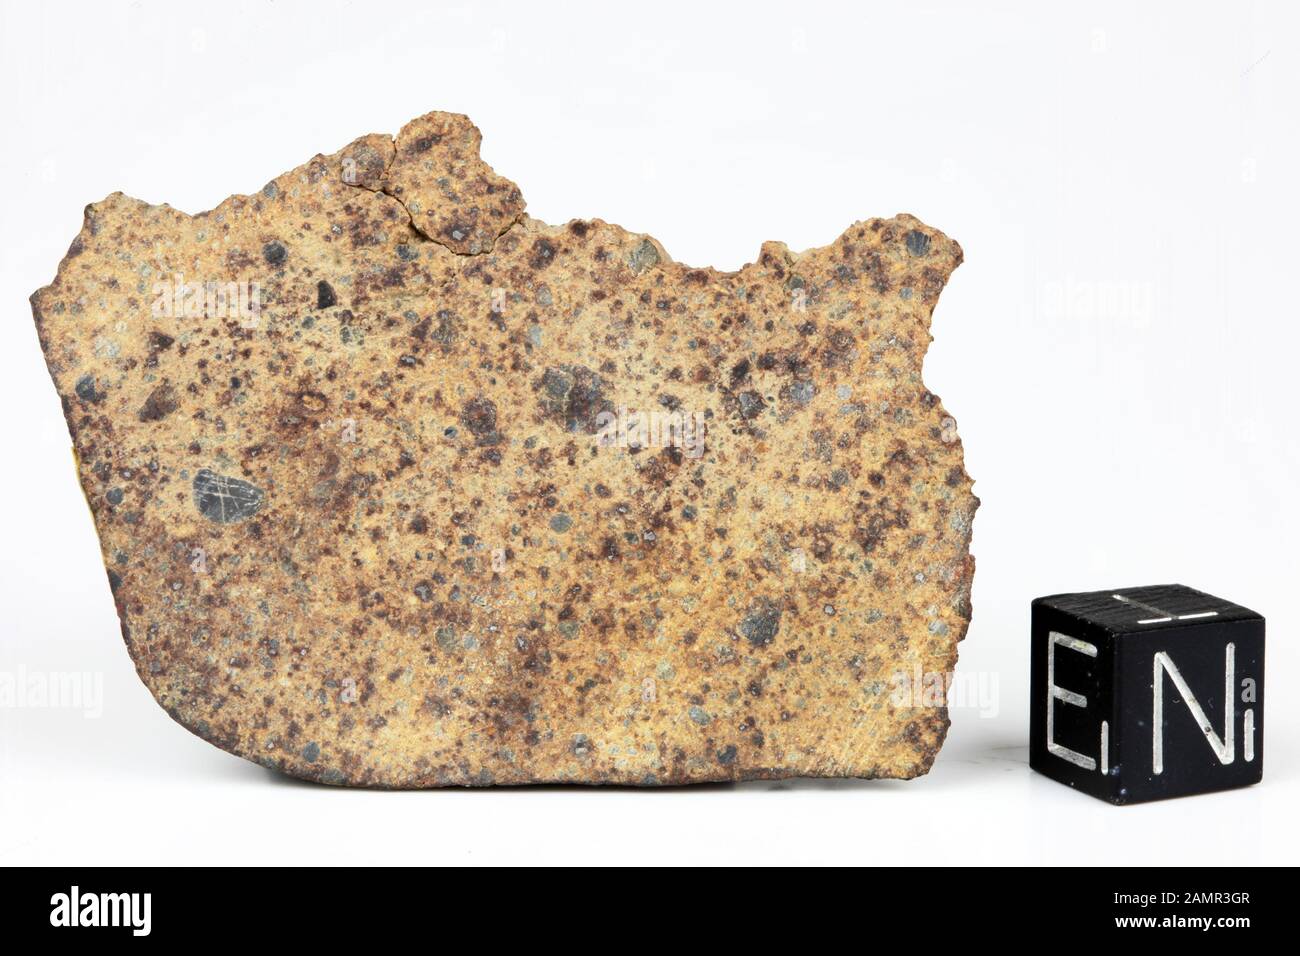 DAR AL GANI 613 - trovati 1998, Dar Al Gani, Libia. Chondrite LL4. Massa totale di 566 grammi. Foto Stock